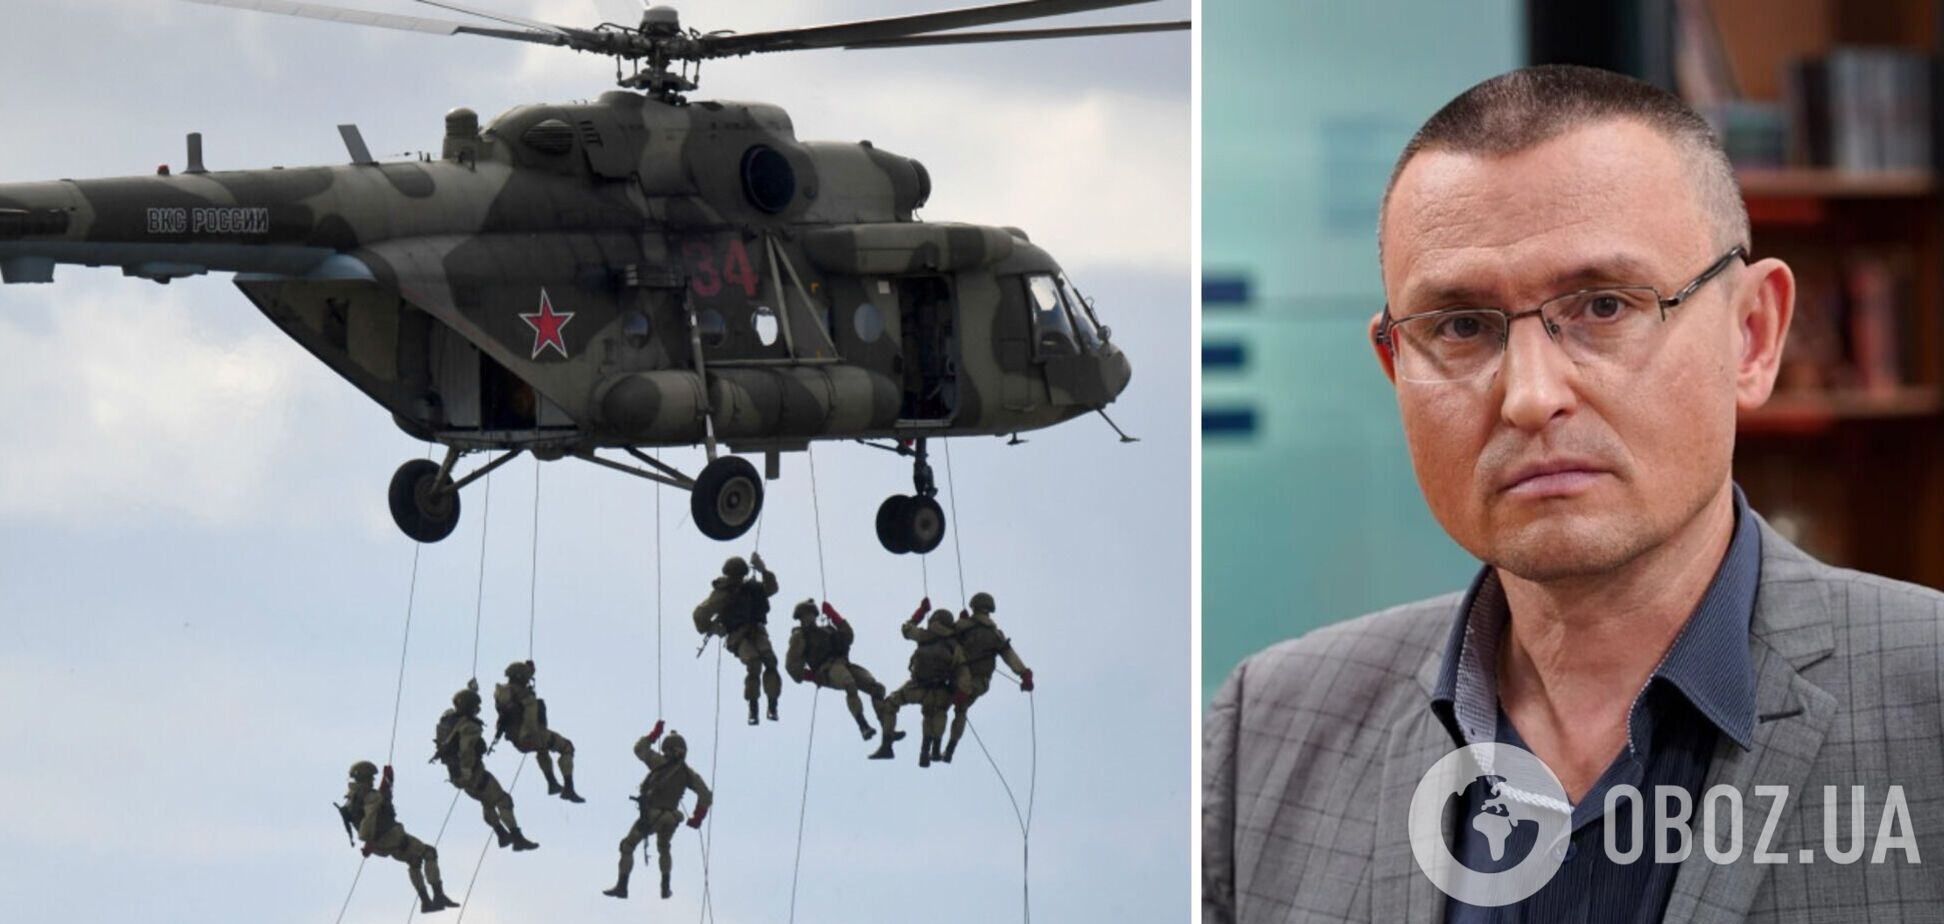 Путин может высадить десант, чтобы отрезать ВСУ от поставок оружия, – Селезнев